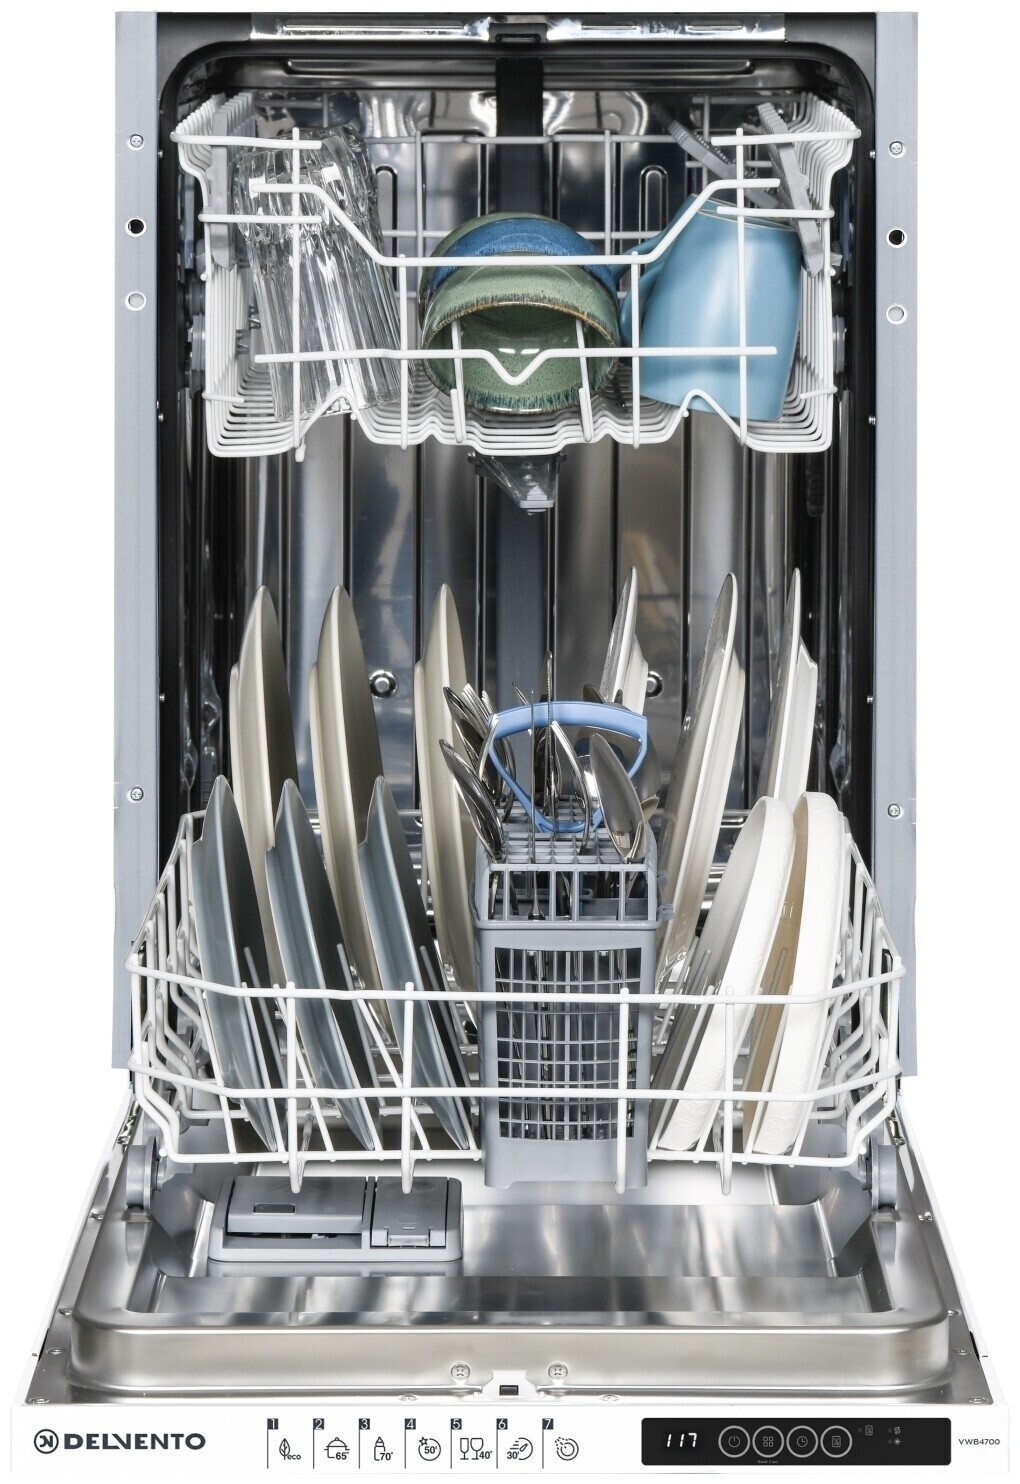 Посудомоечная машина delvento. Delvento vwb4700 посудомоечная машина. Встраиваемая посудомоечная машина Delvento vwb4702 45 см. Delvento Standart vwb6702 White. Встраиваемая посудомоечная машина Samsung.